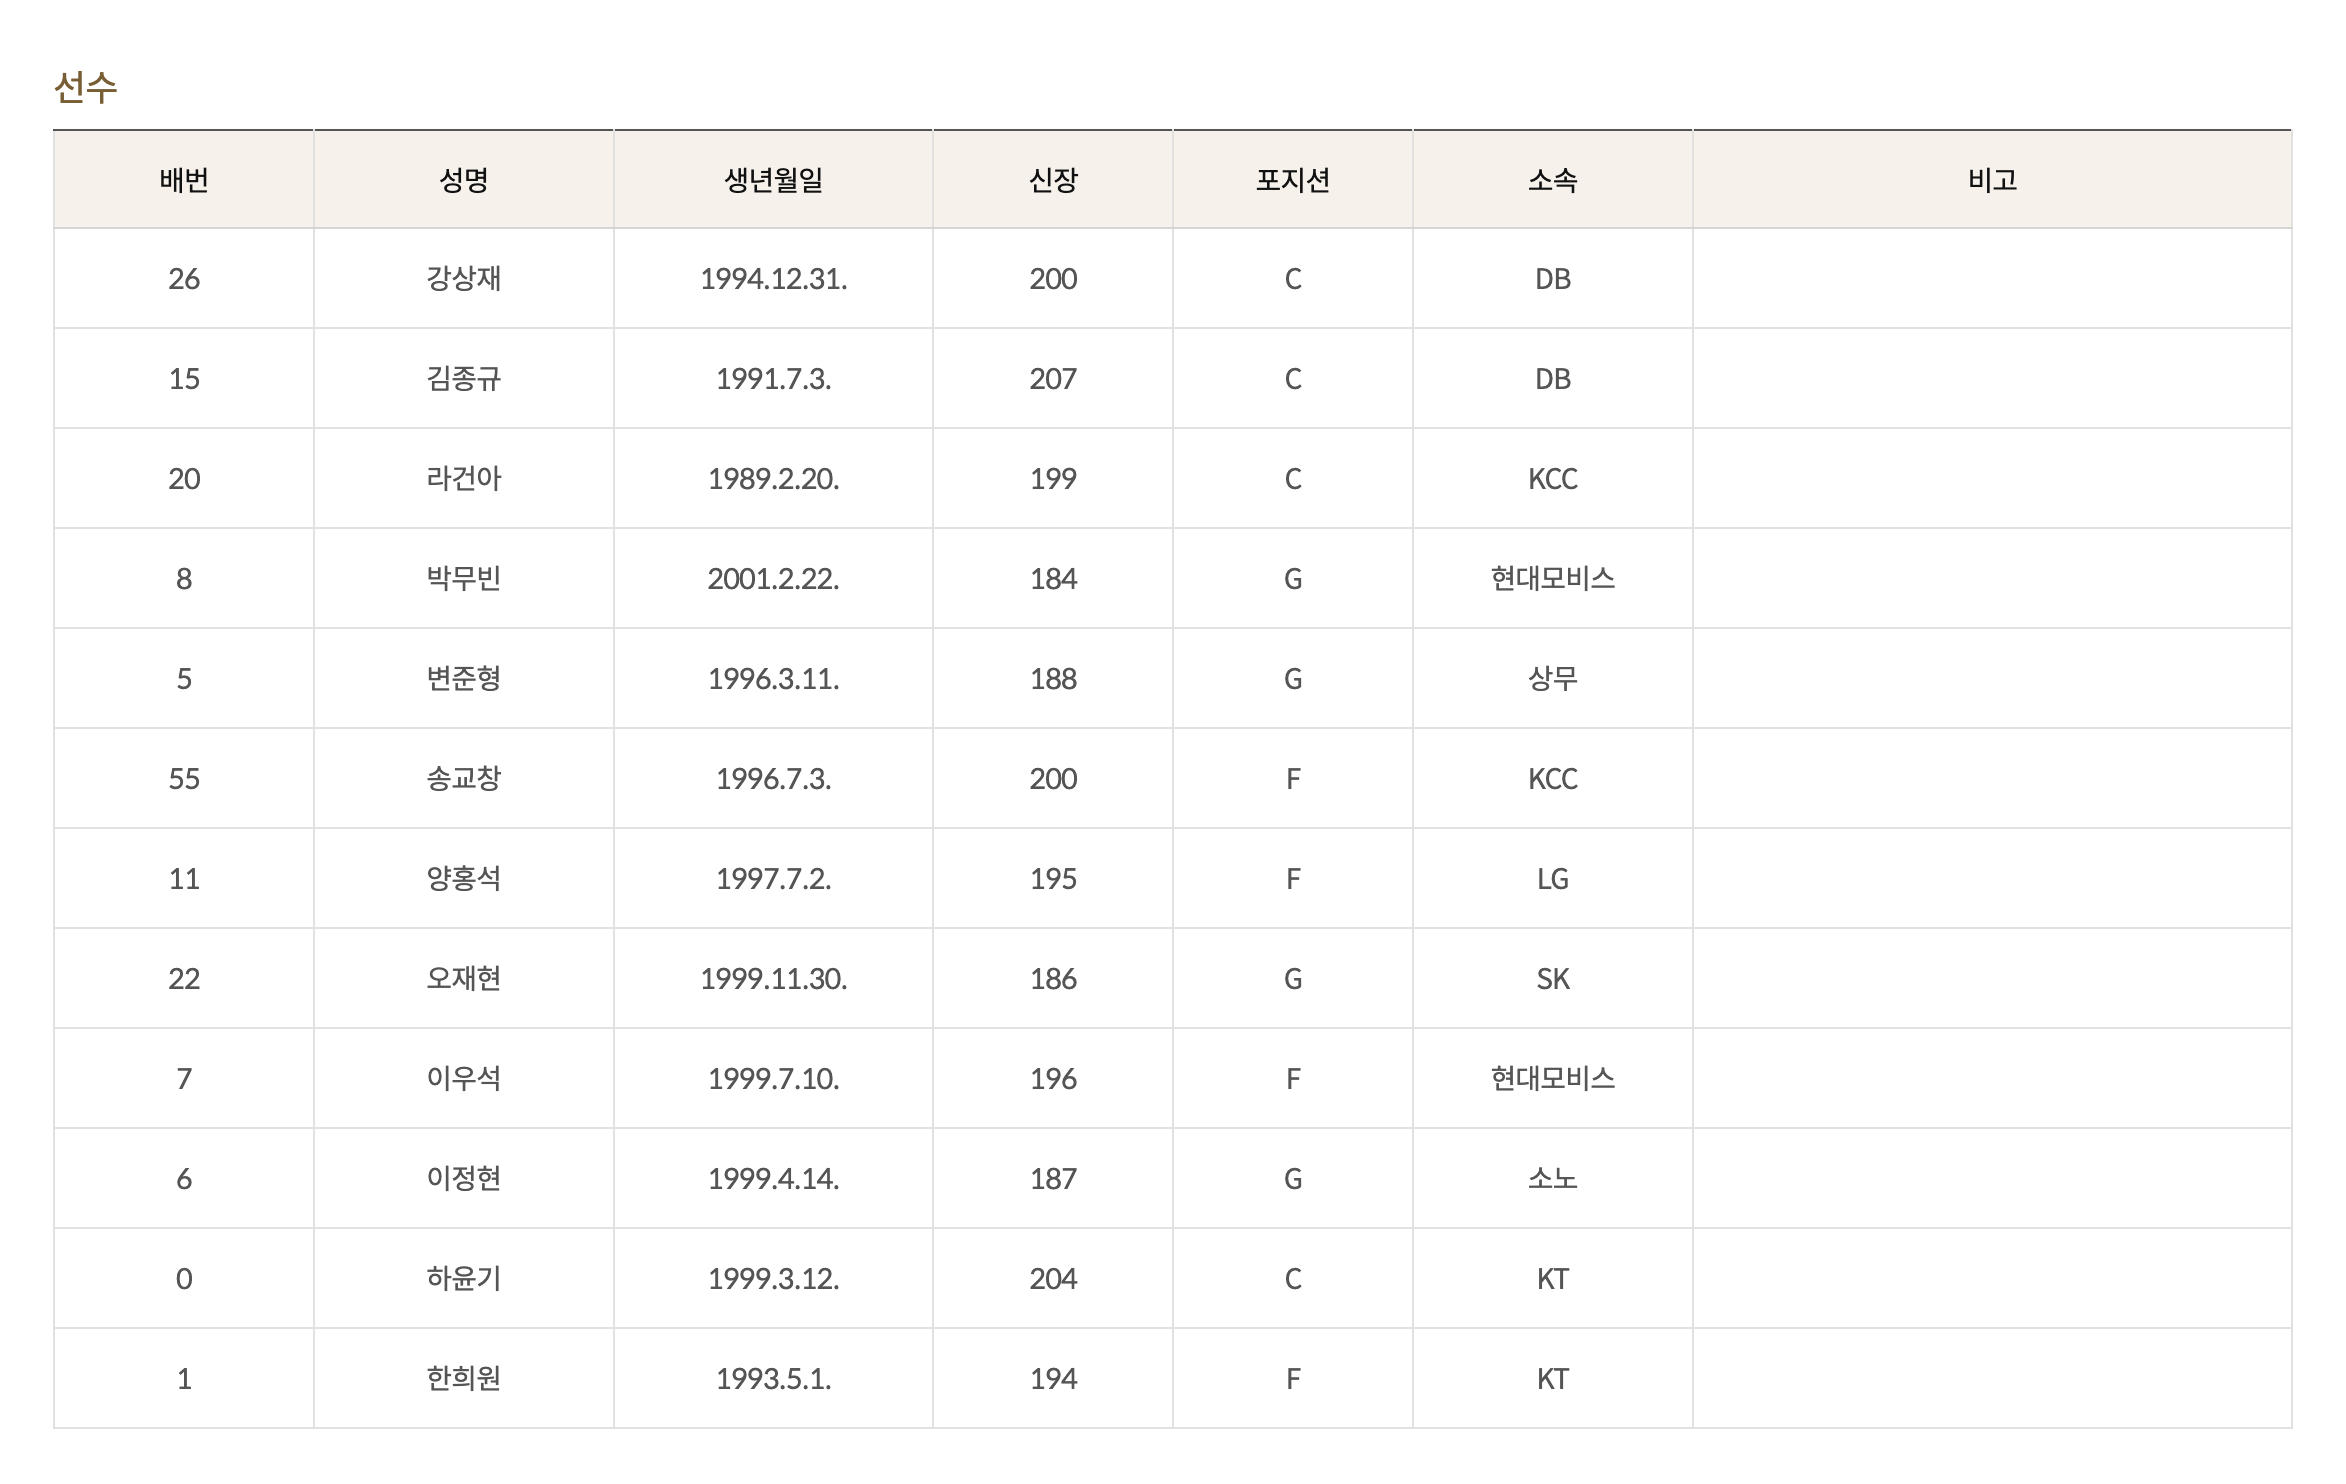 대한민국 농구협회 공식 자료인 국가대표 선수 명단입니다.